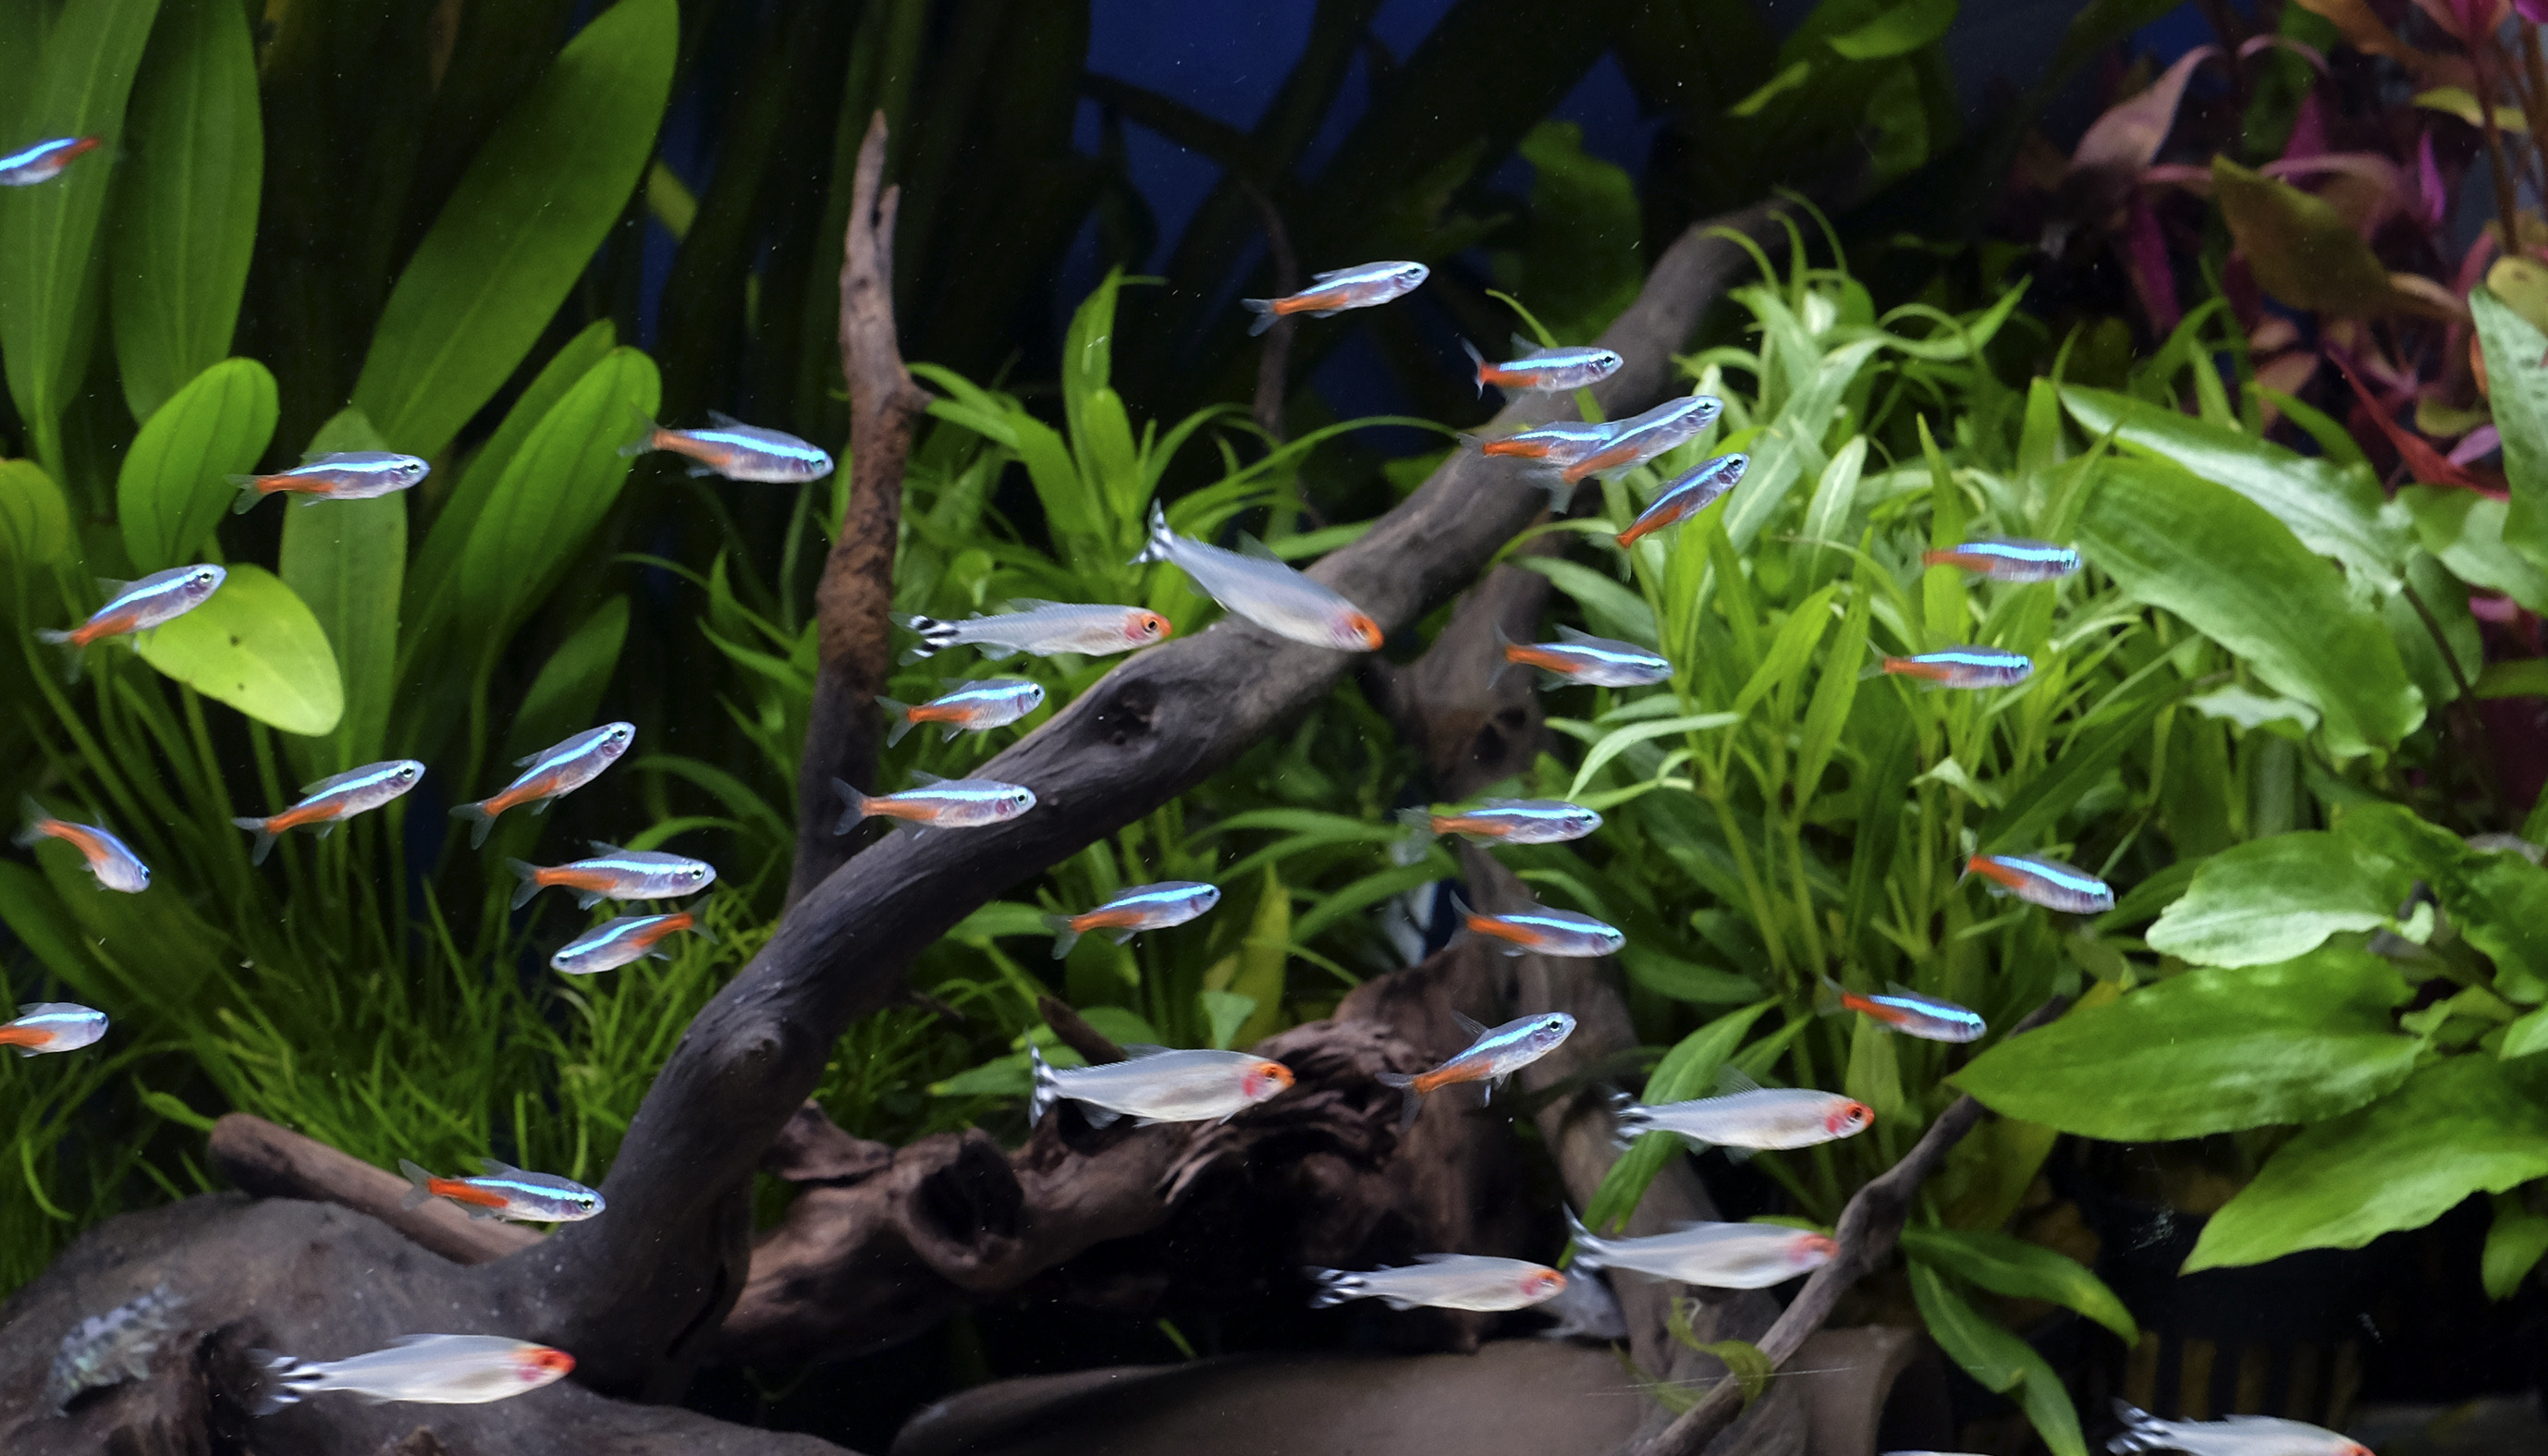 Sollozos recibir Destino Acuariofilia Natural - My Fish Room - Tienda de acuariofilia en Málaga